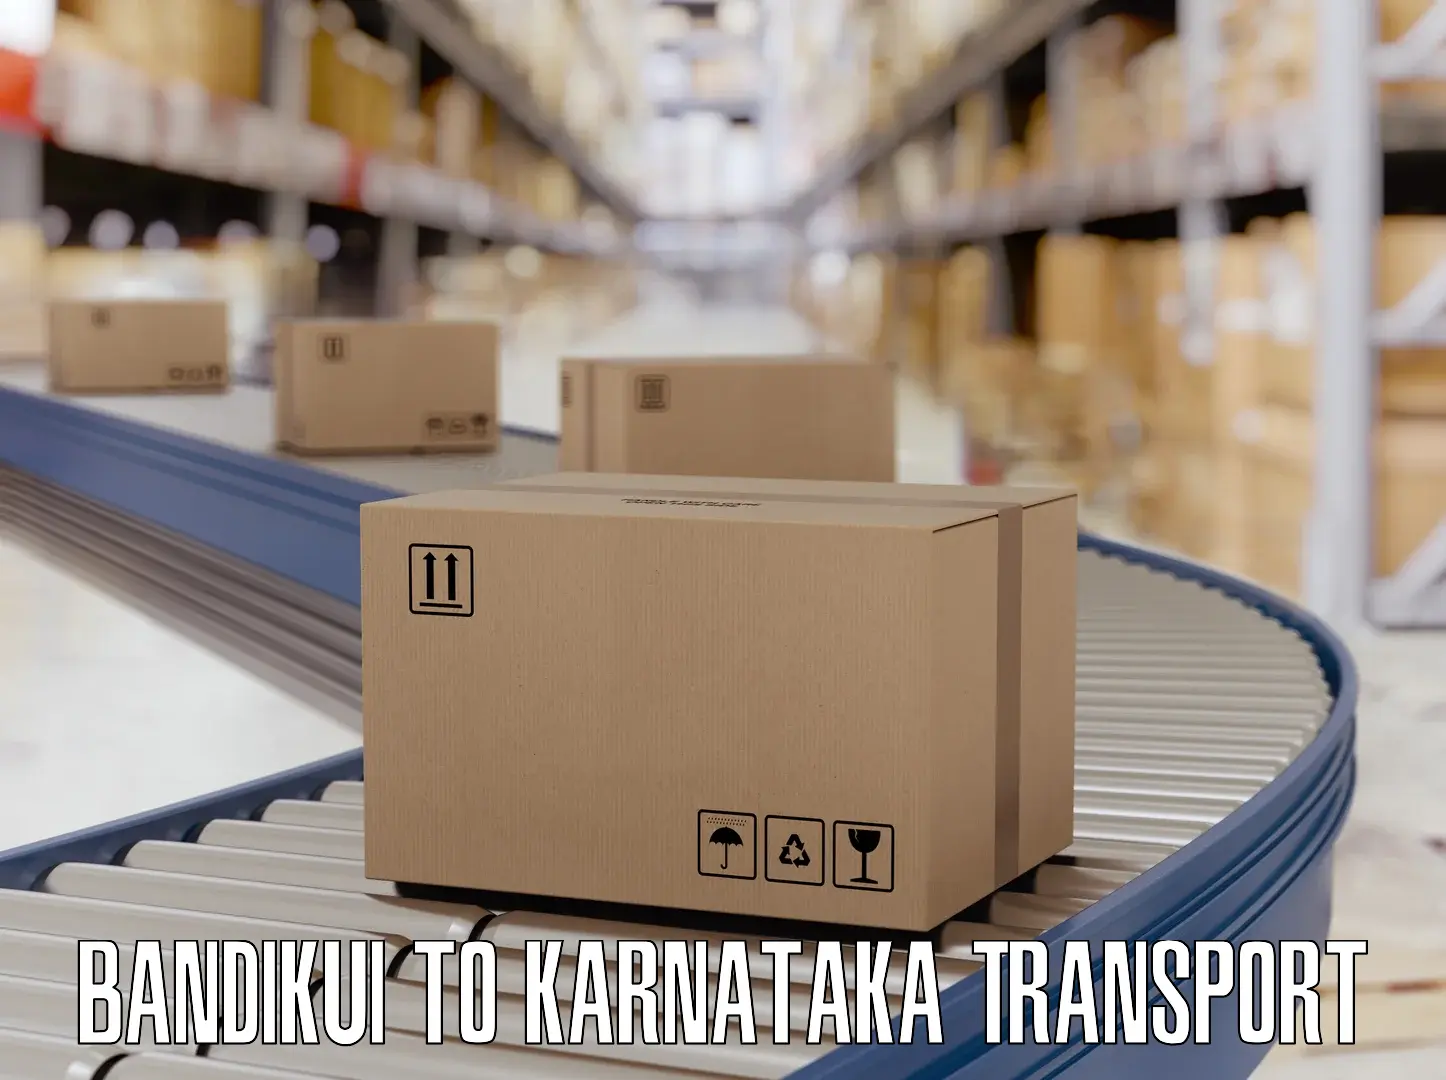 Daily parcel service transport Bandikui to Chintamani Kolar